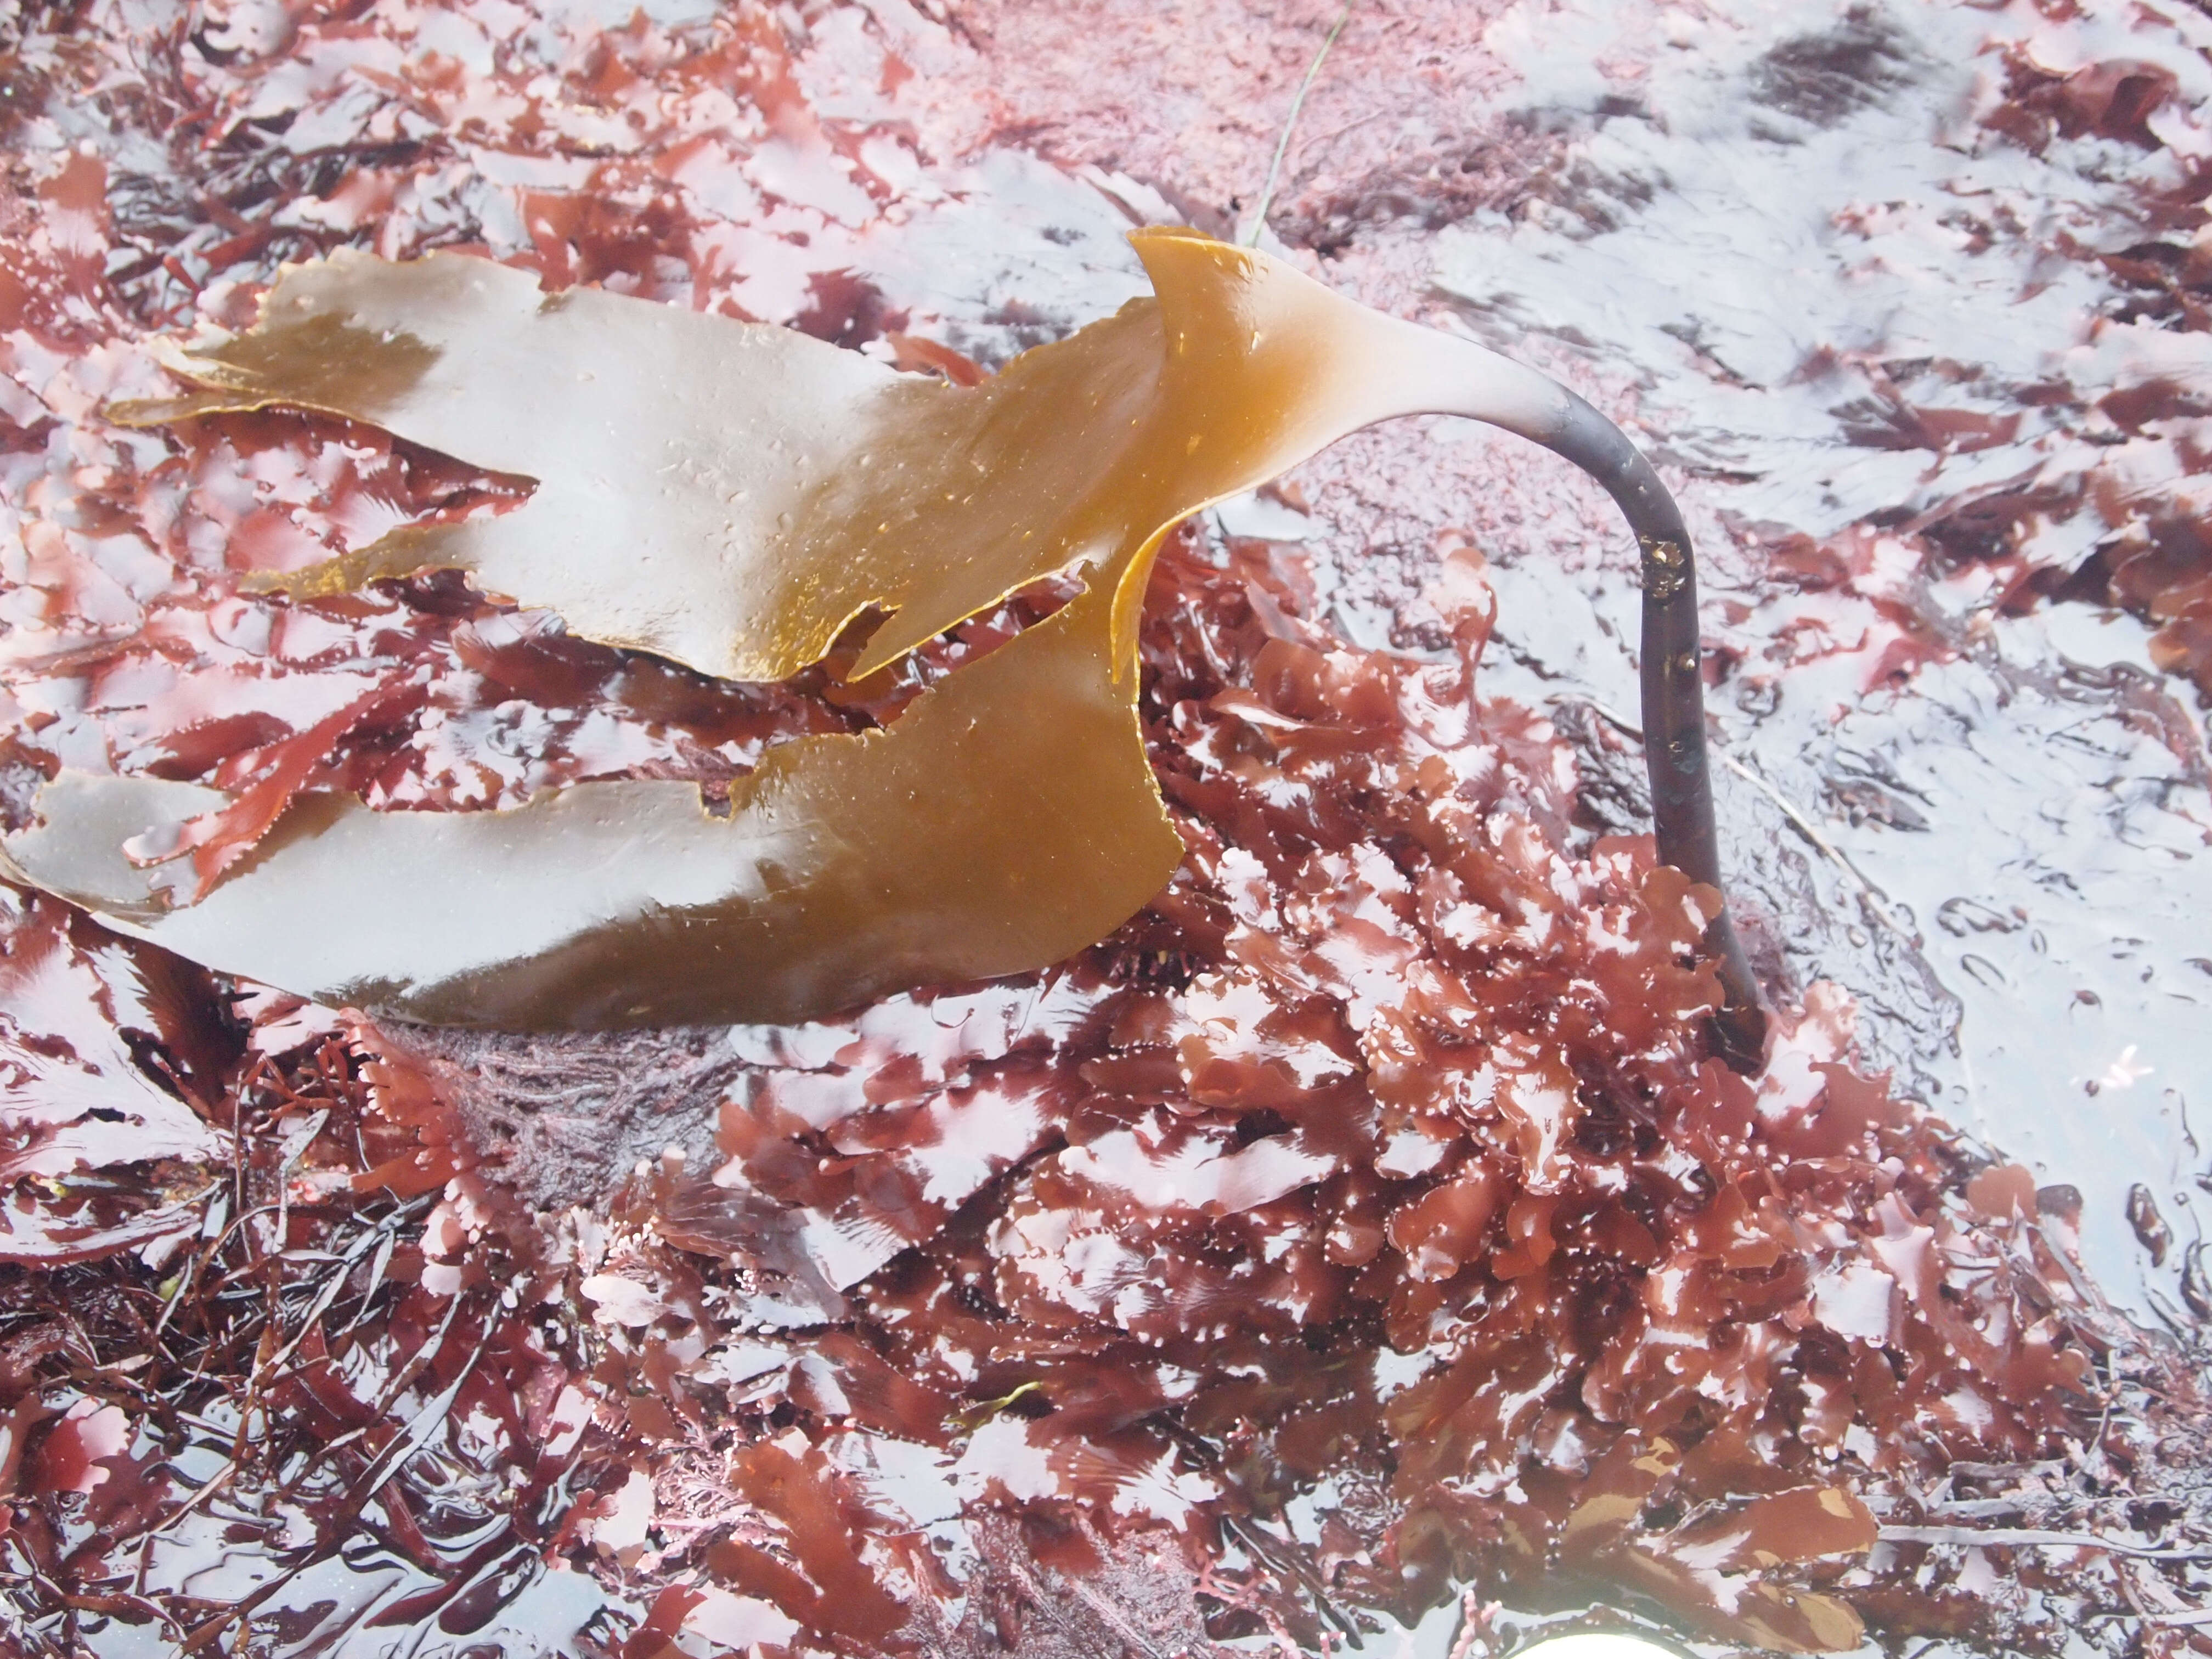 Image of brown algae